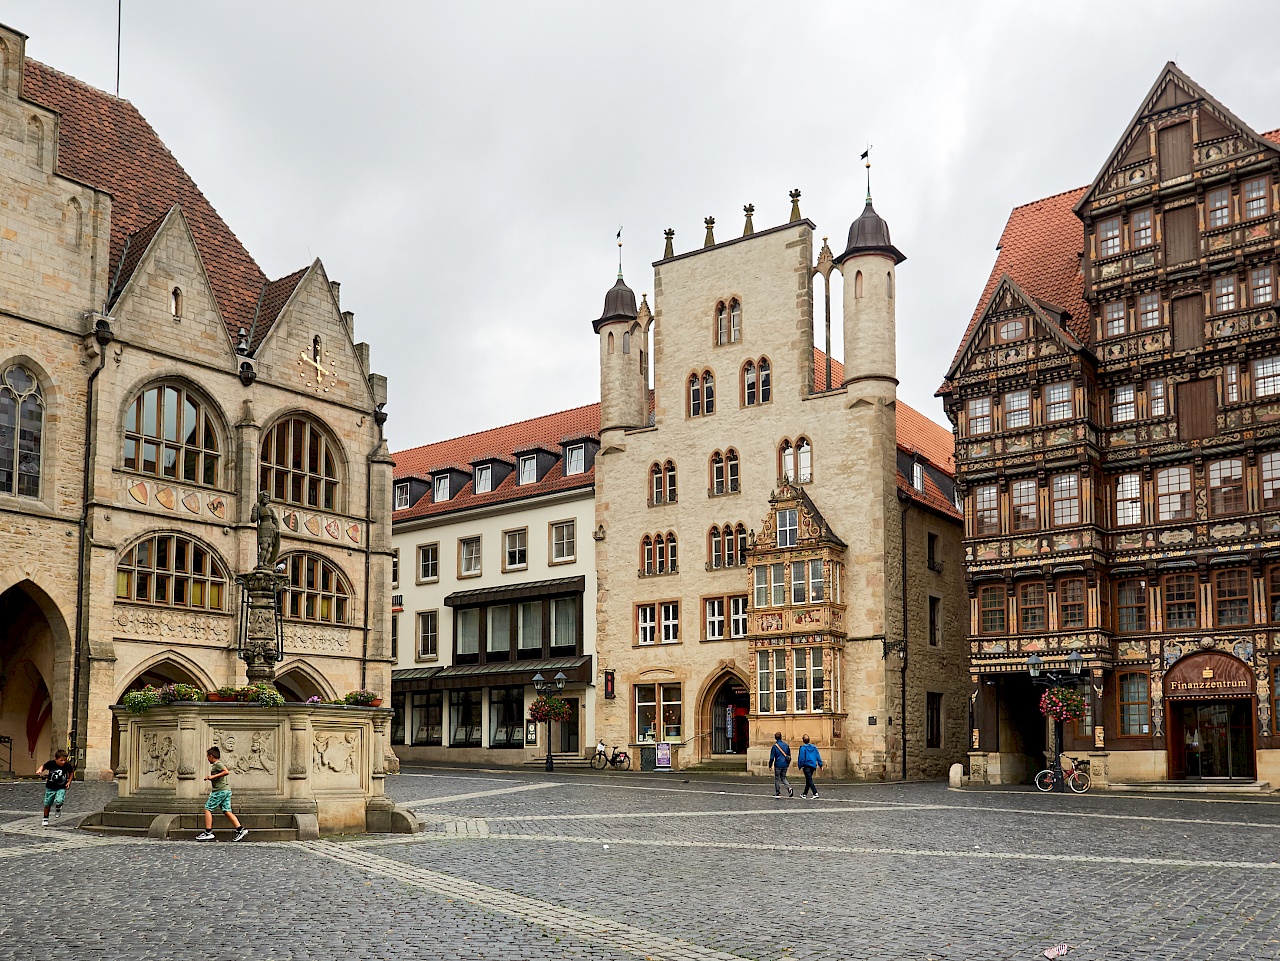 Historischer Marktplatz in Hildesheim